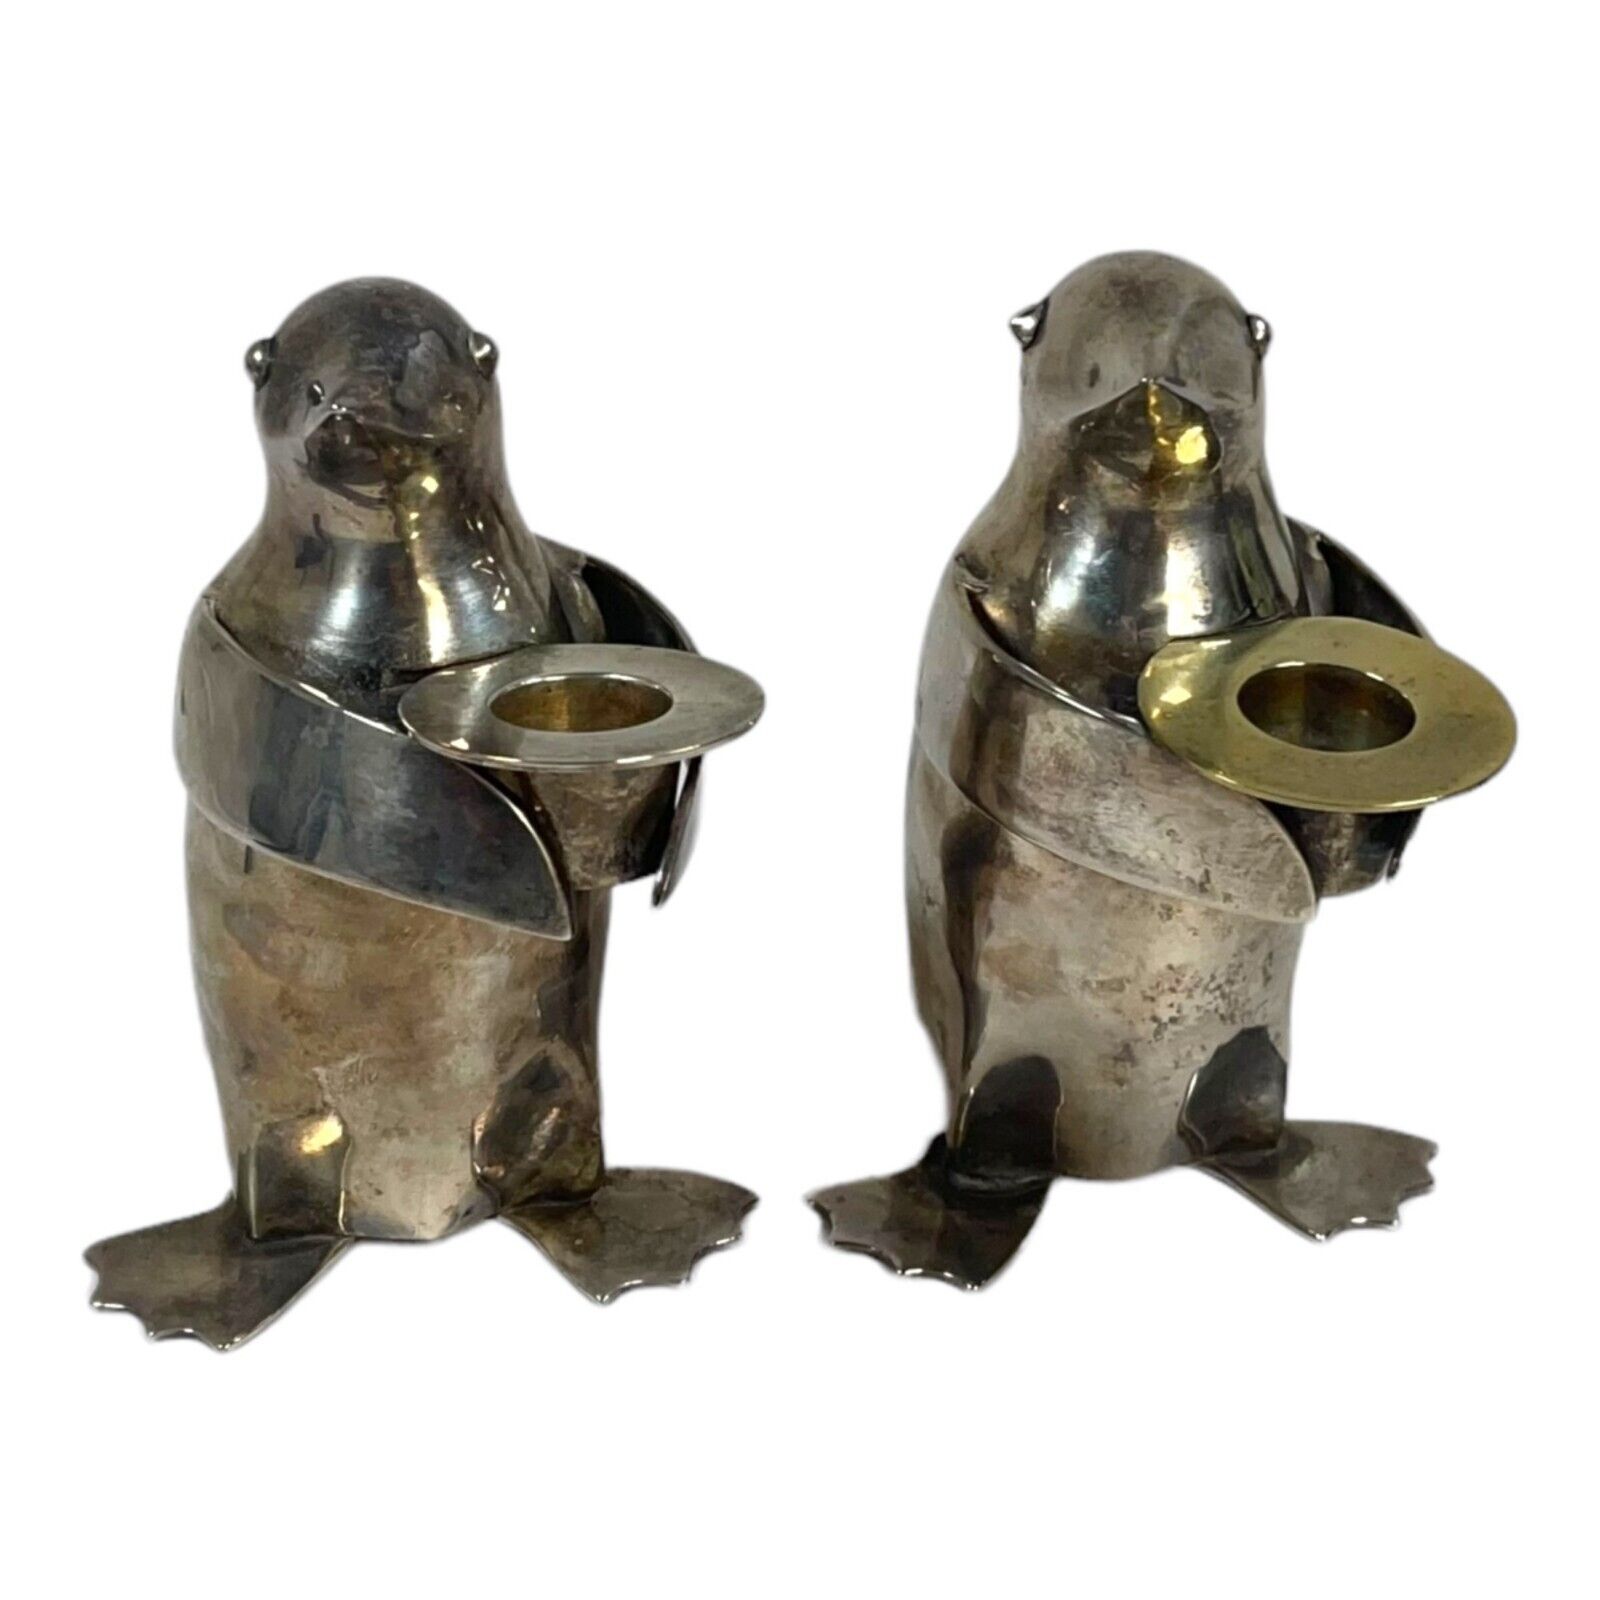 Restoration Hardware Vtg Set of 2 Penguin Candle Holders Silverplate Candlestick